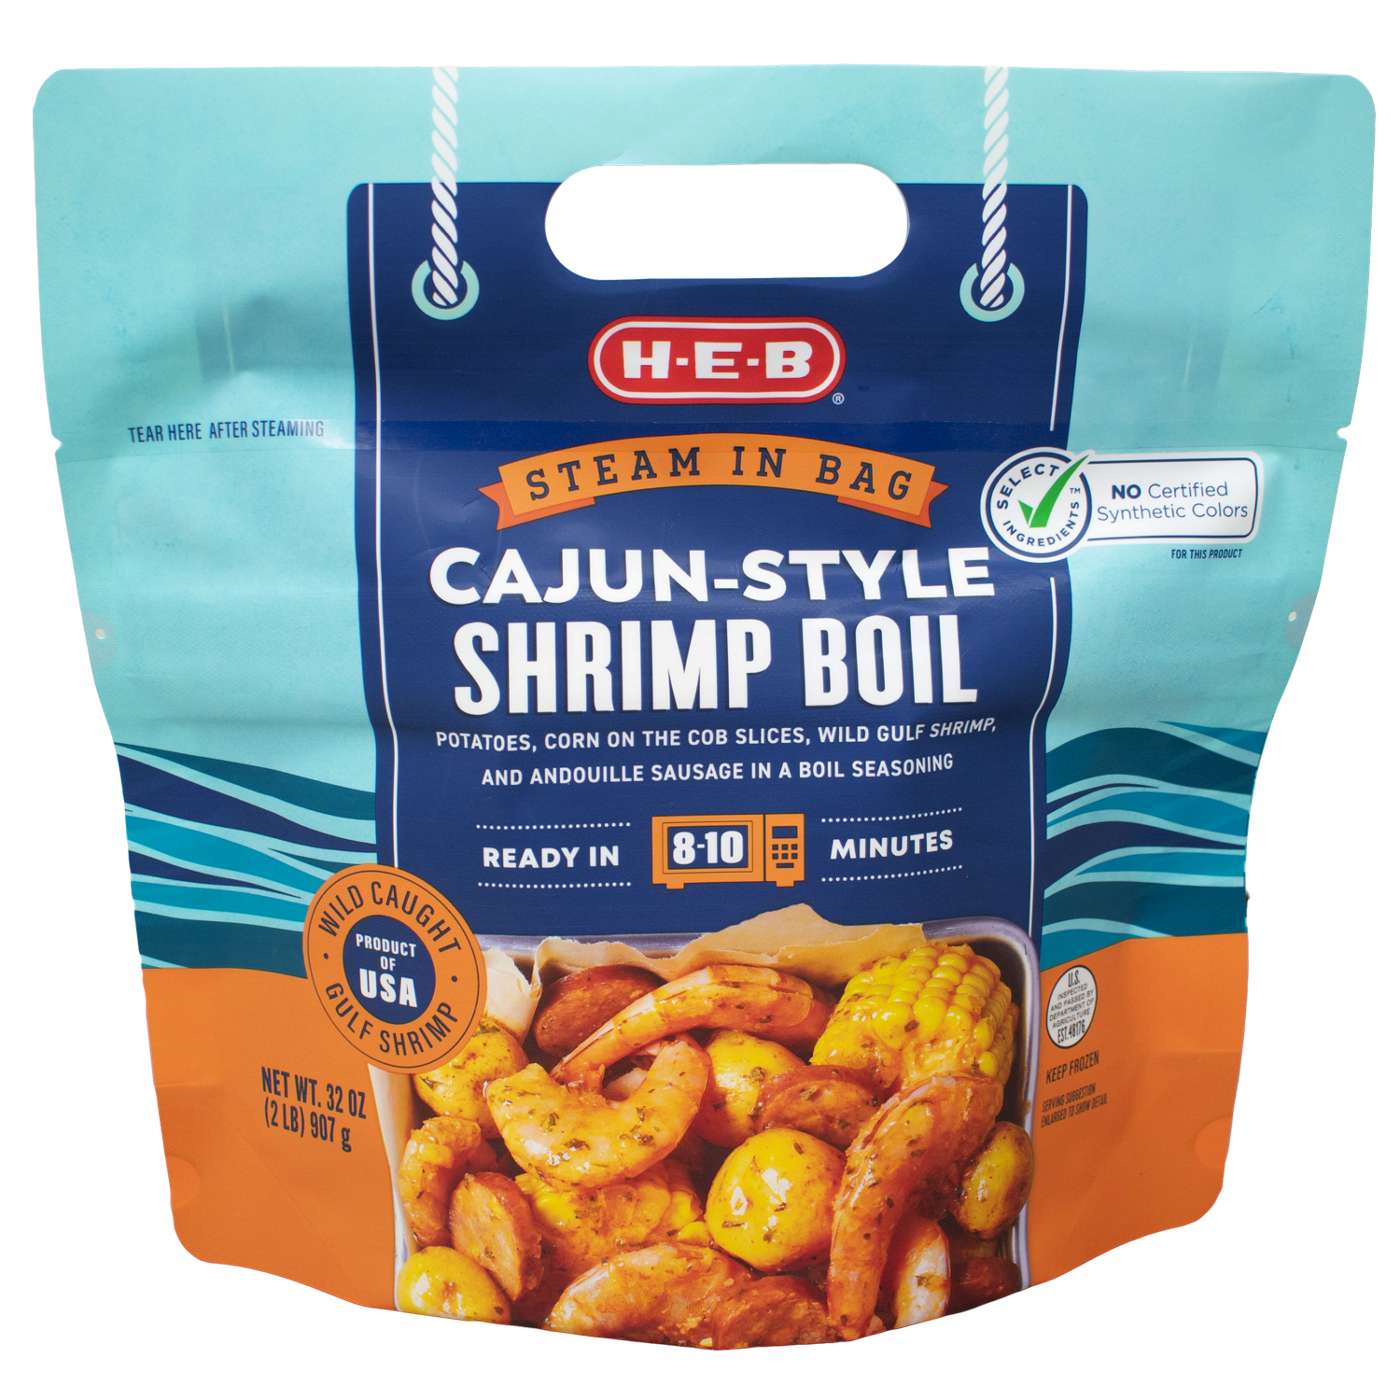 H-E-B Frozen Steamable Cajun-Style Shrimp Boil; image 1 of 2